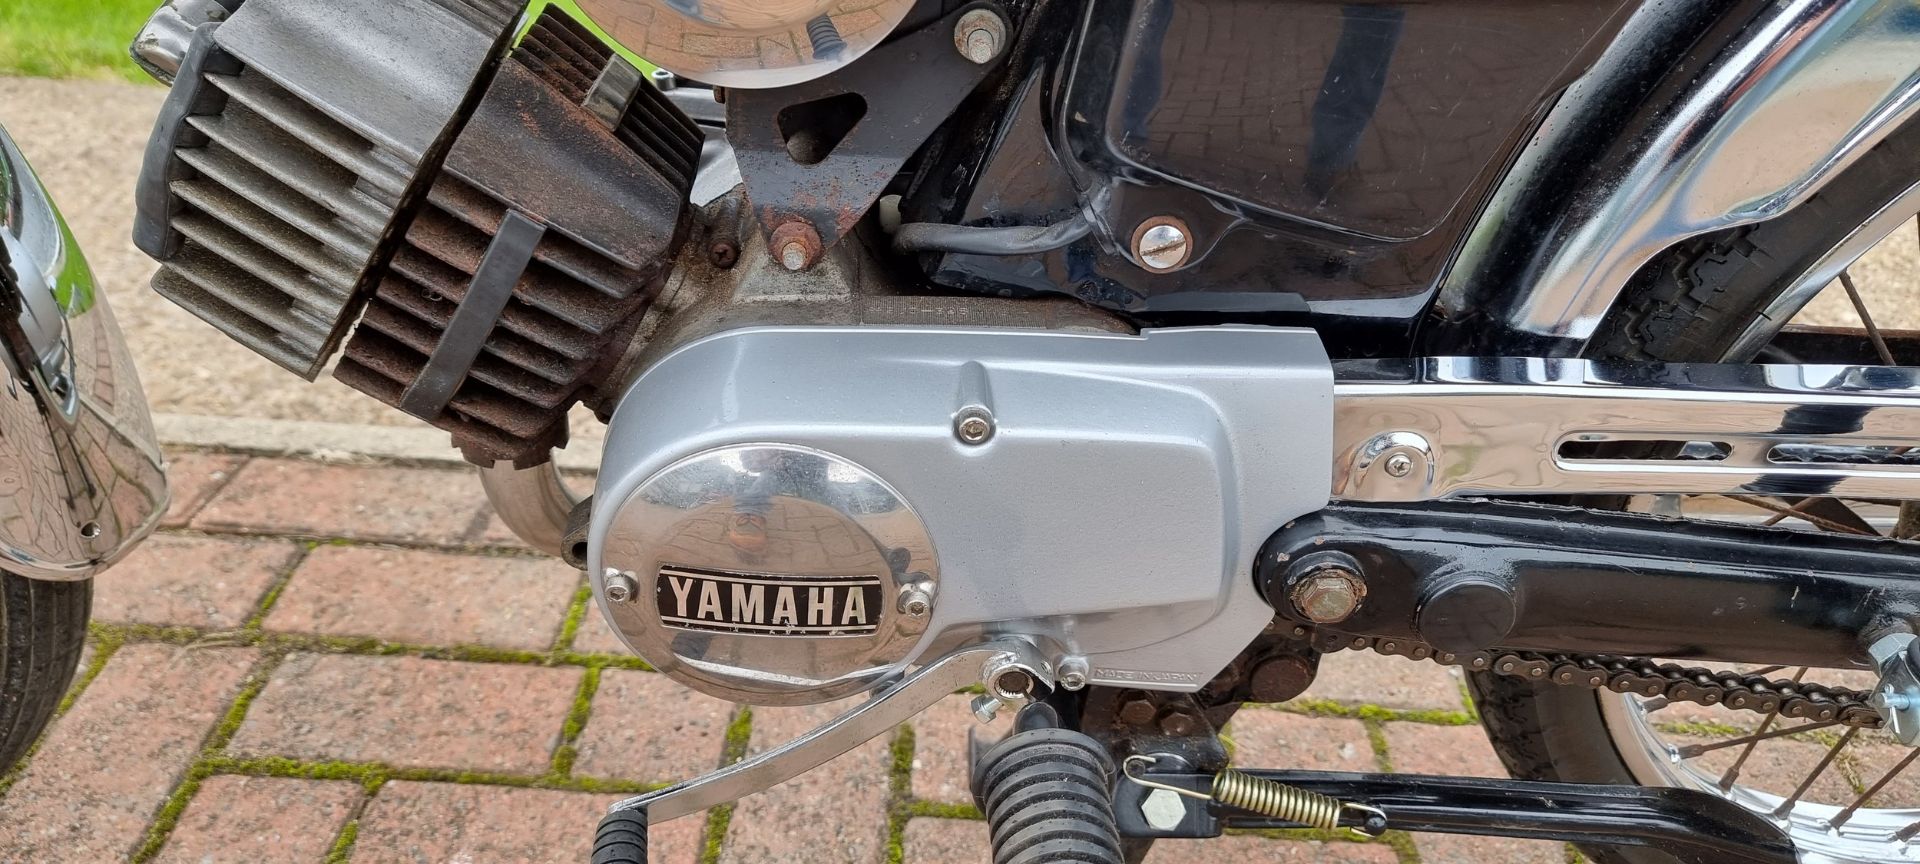 1990 Yamaha YB100, 97cc. Registration number H349 BFT. Frame number 2U0-328448. - Image 9 of 13